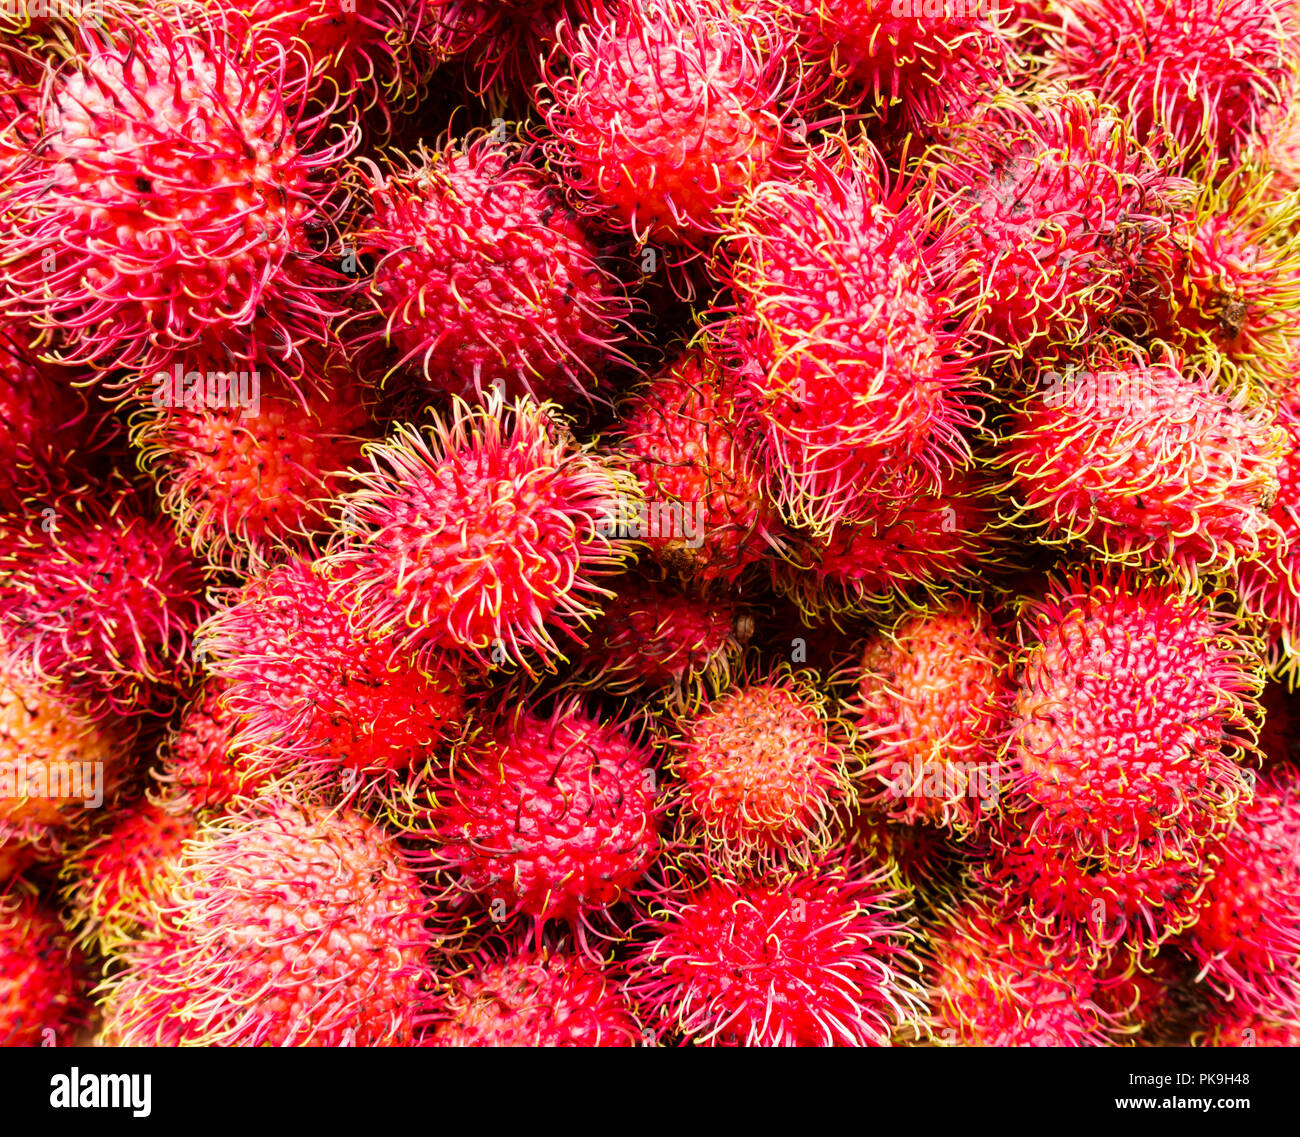 Close-up of fresh fruits tropicaux asiatique ramboutan indonésien produire pour la vente à un marché dans Chinatown, New York, United States, USA Banque D'Images